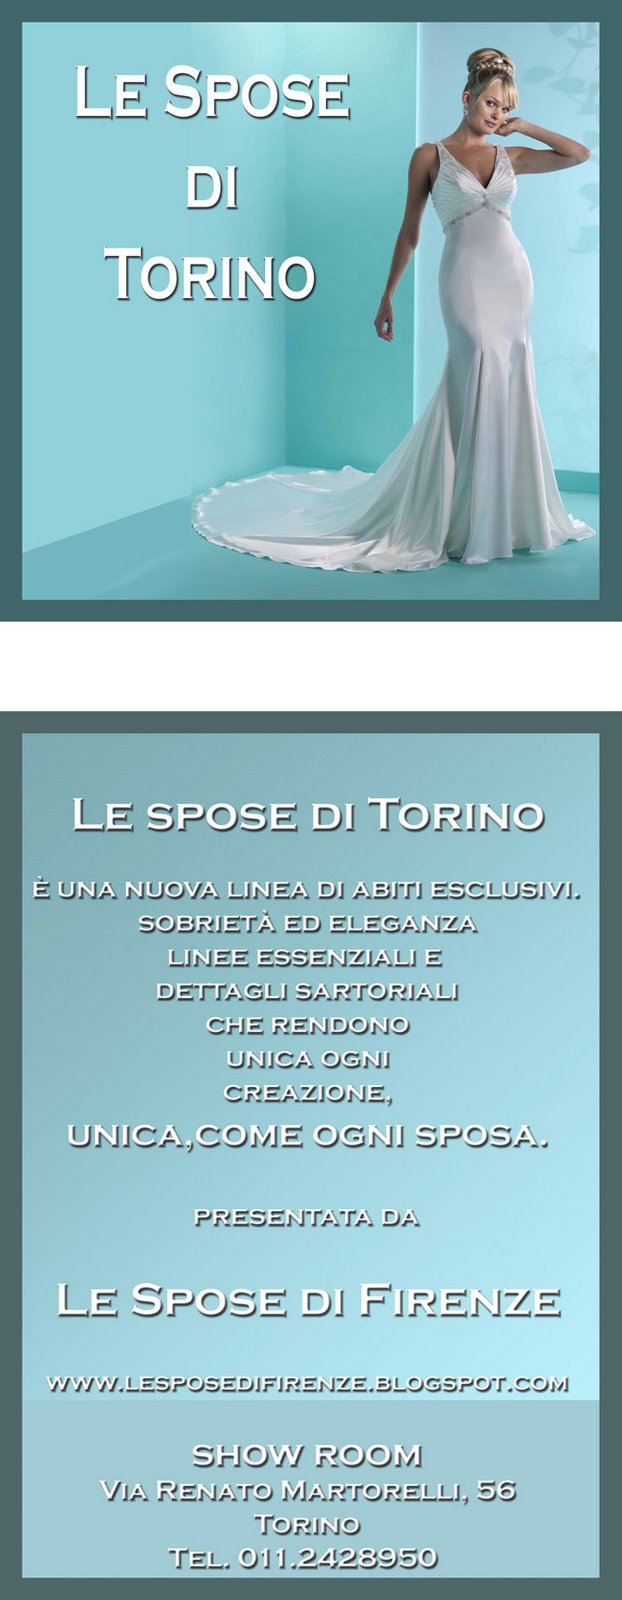 Le Spose di Torino